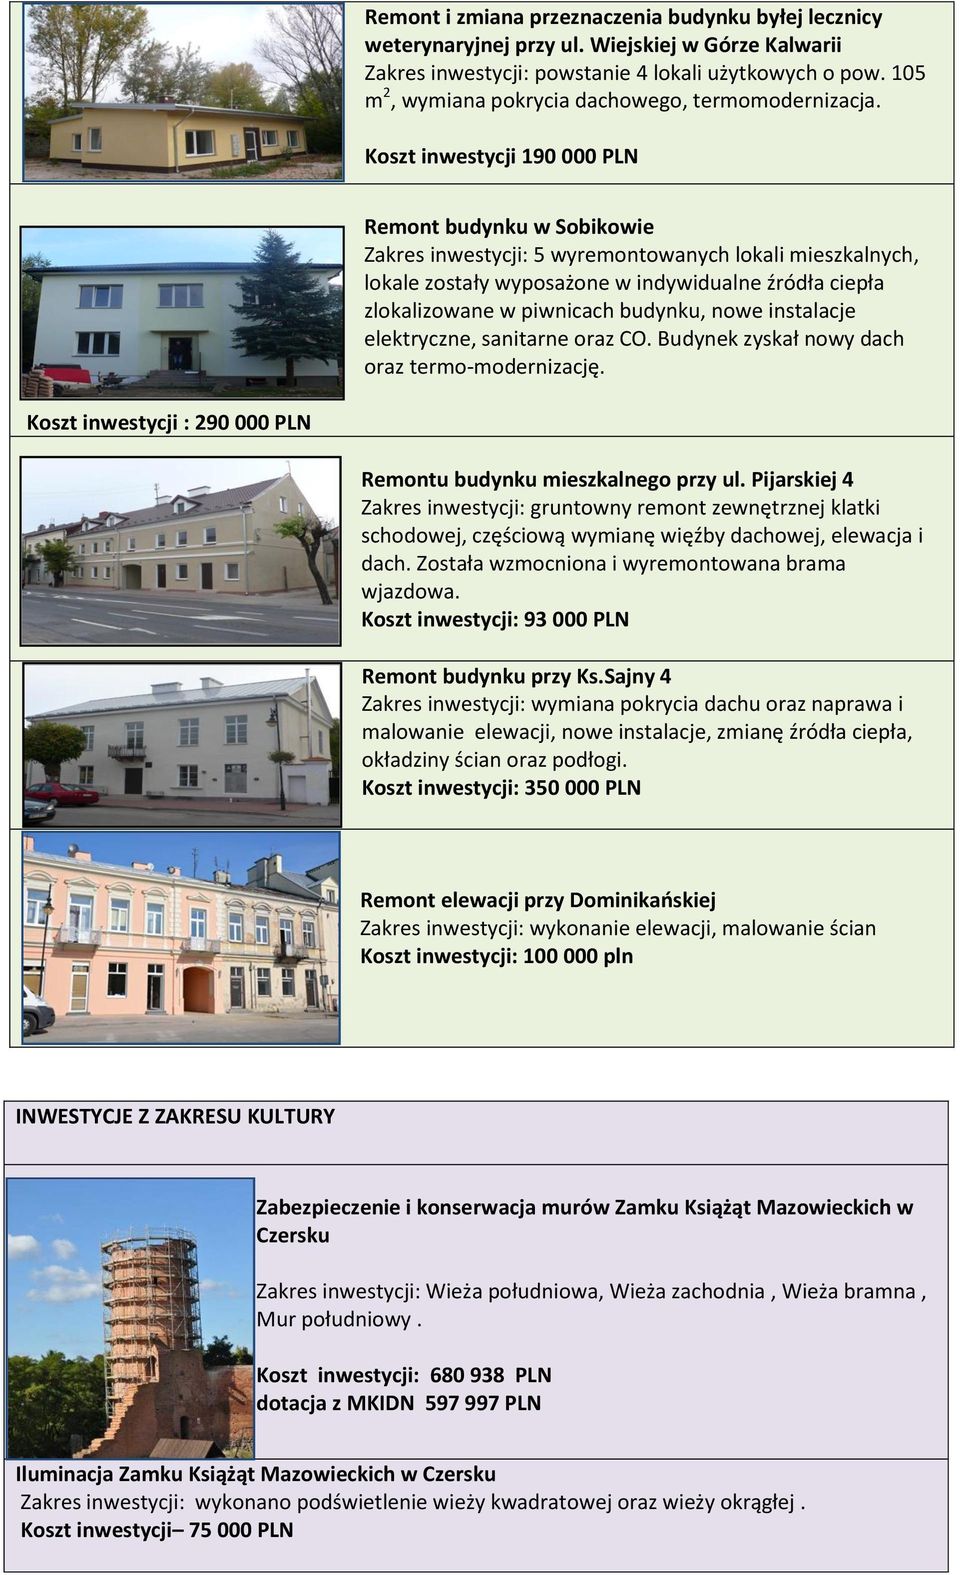 Koszt inwestycji 190 000 PLN Remont budynku w Sobikowie Zakres inwestycji: 5 wyremontowanych lokali mieszkalnych, lokale zostały wyposażone w indywidualne źródła ciepła zlokalizowane w piwnicach